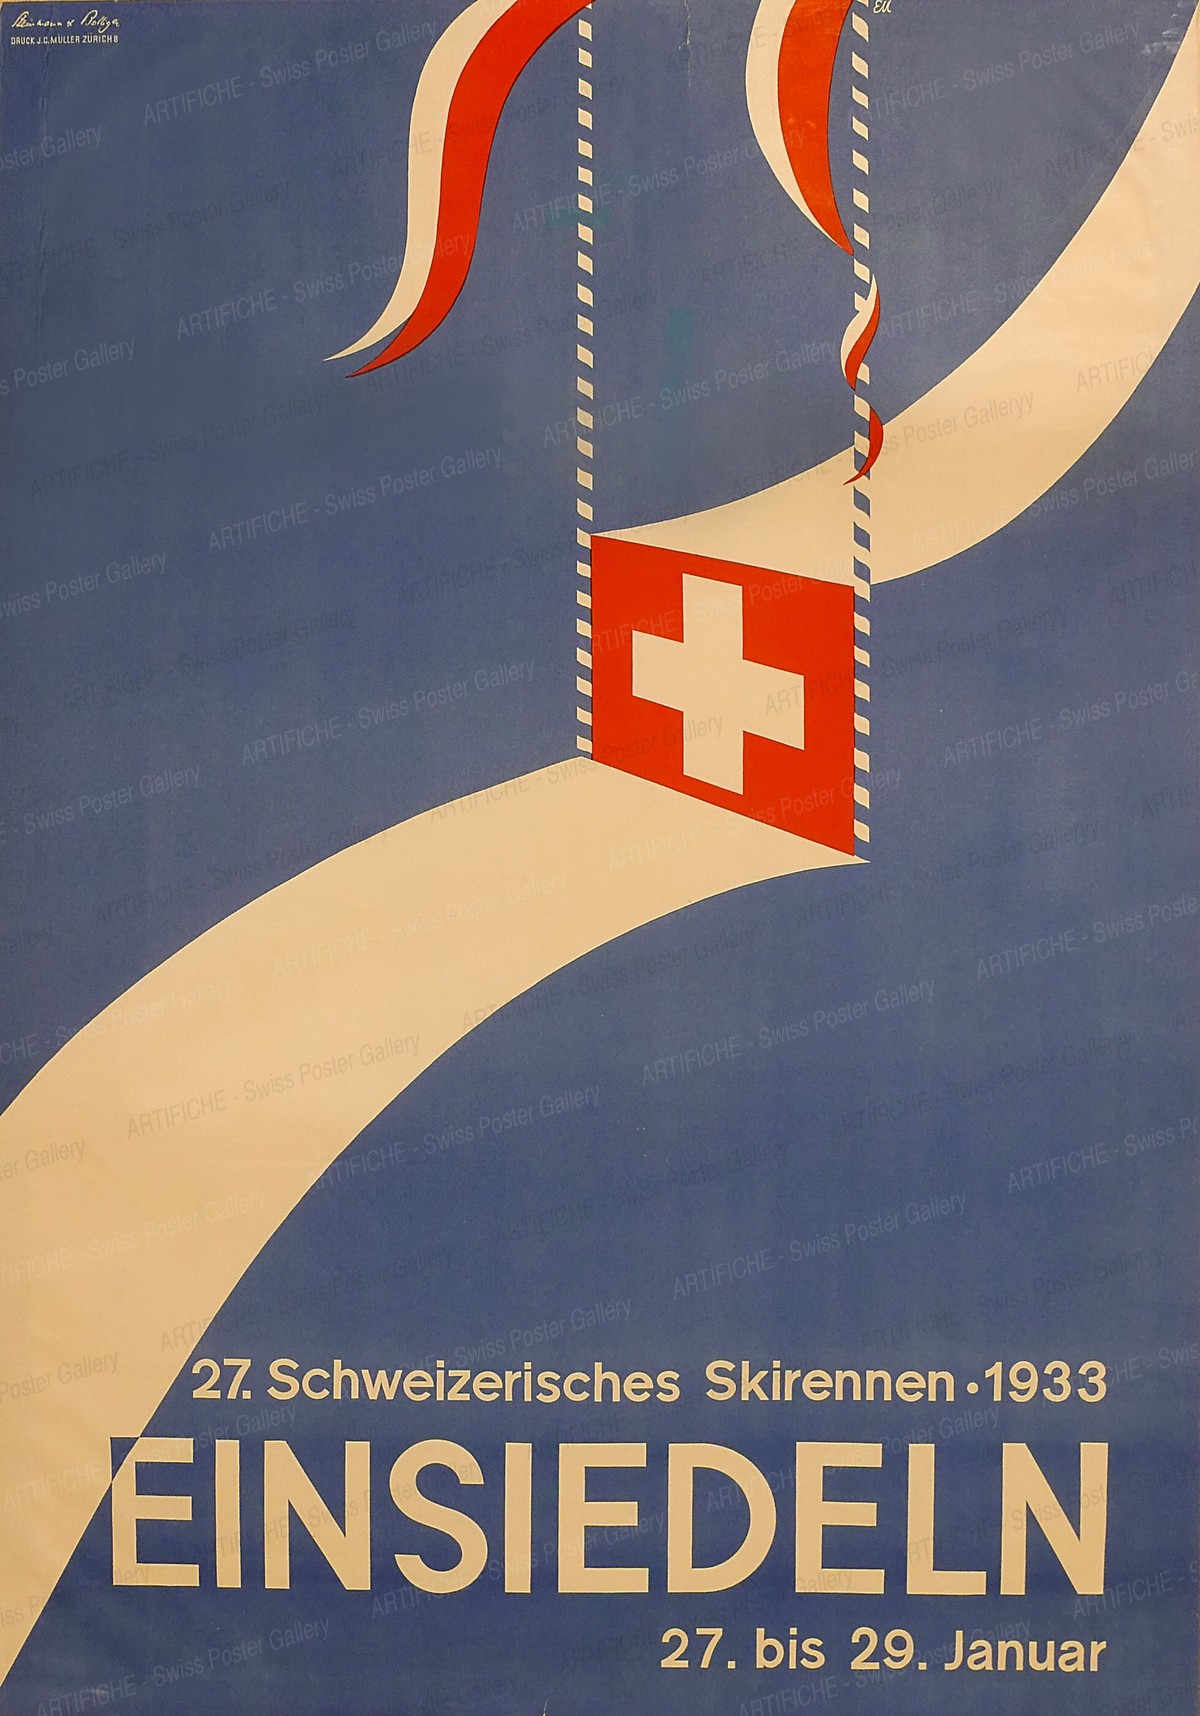 Einsiedeln 27th Swiss Ski Race, Steinmann & Bolliger